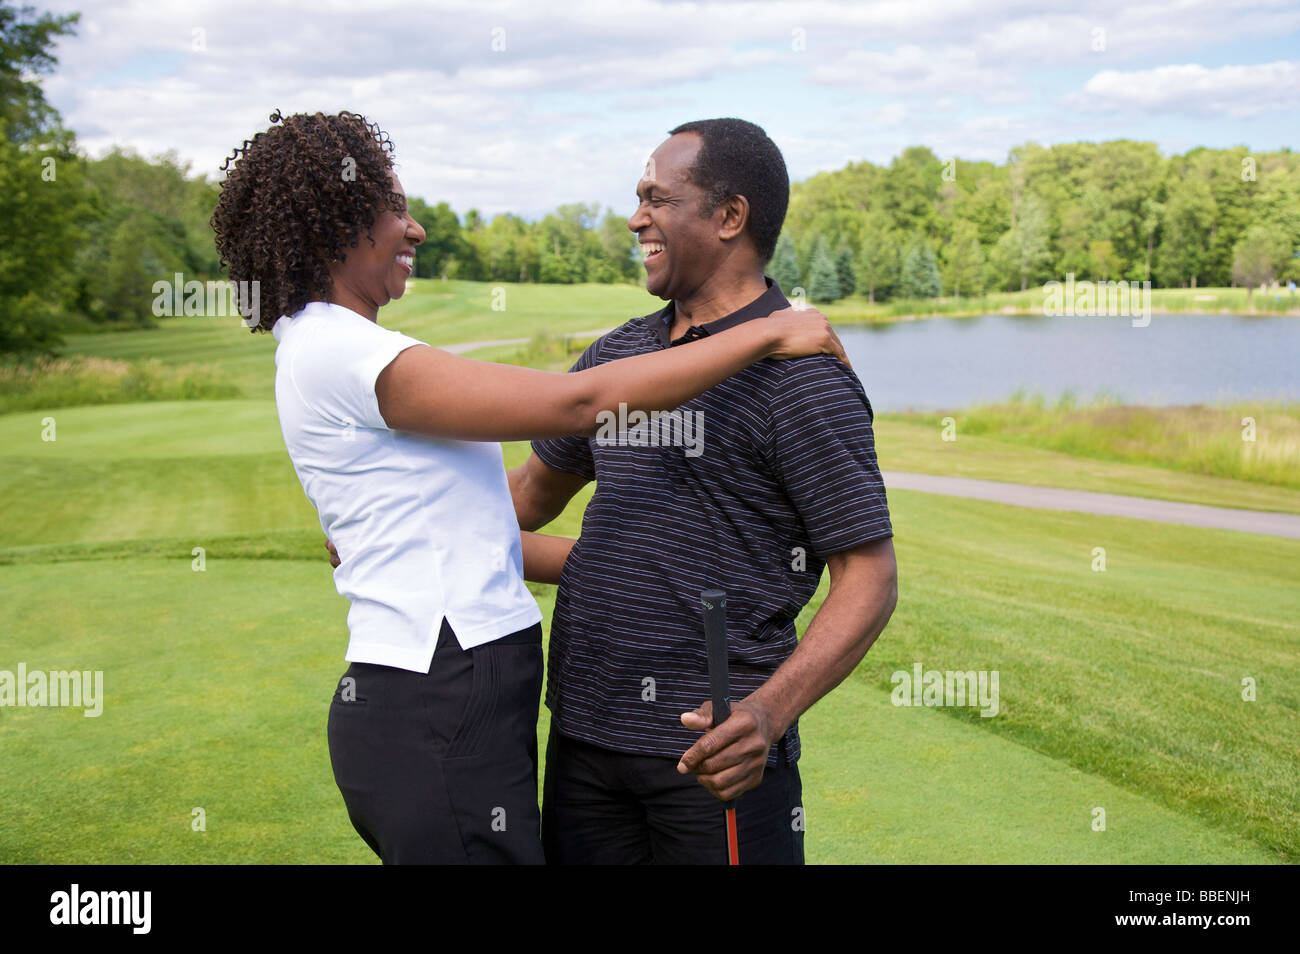 Paar, umarmen, am Golfplatz Stockfoto